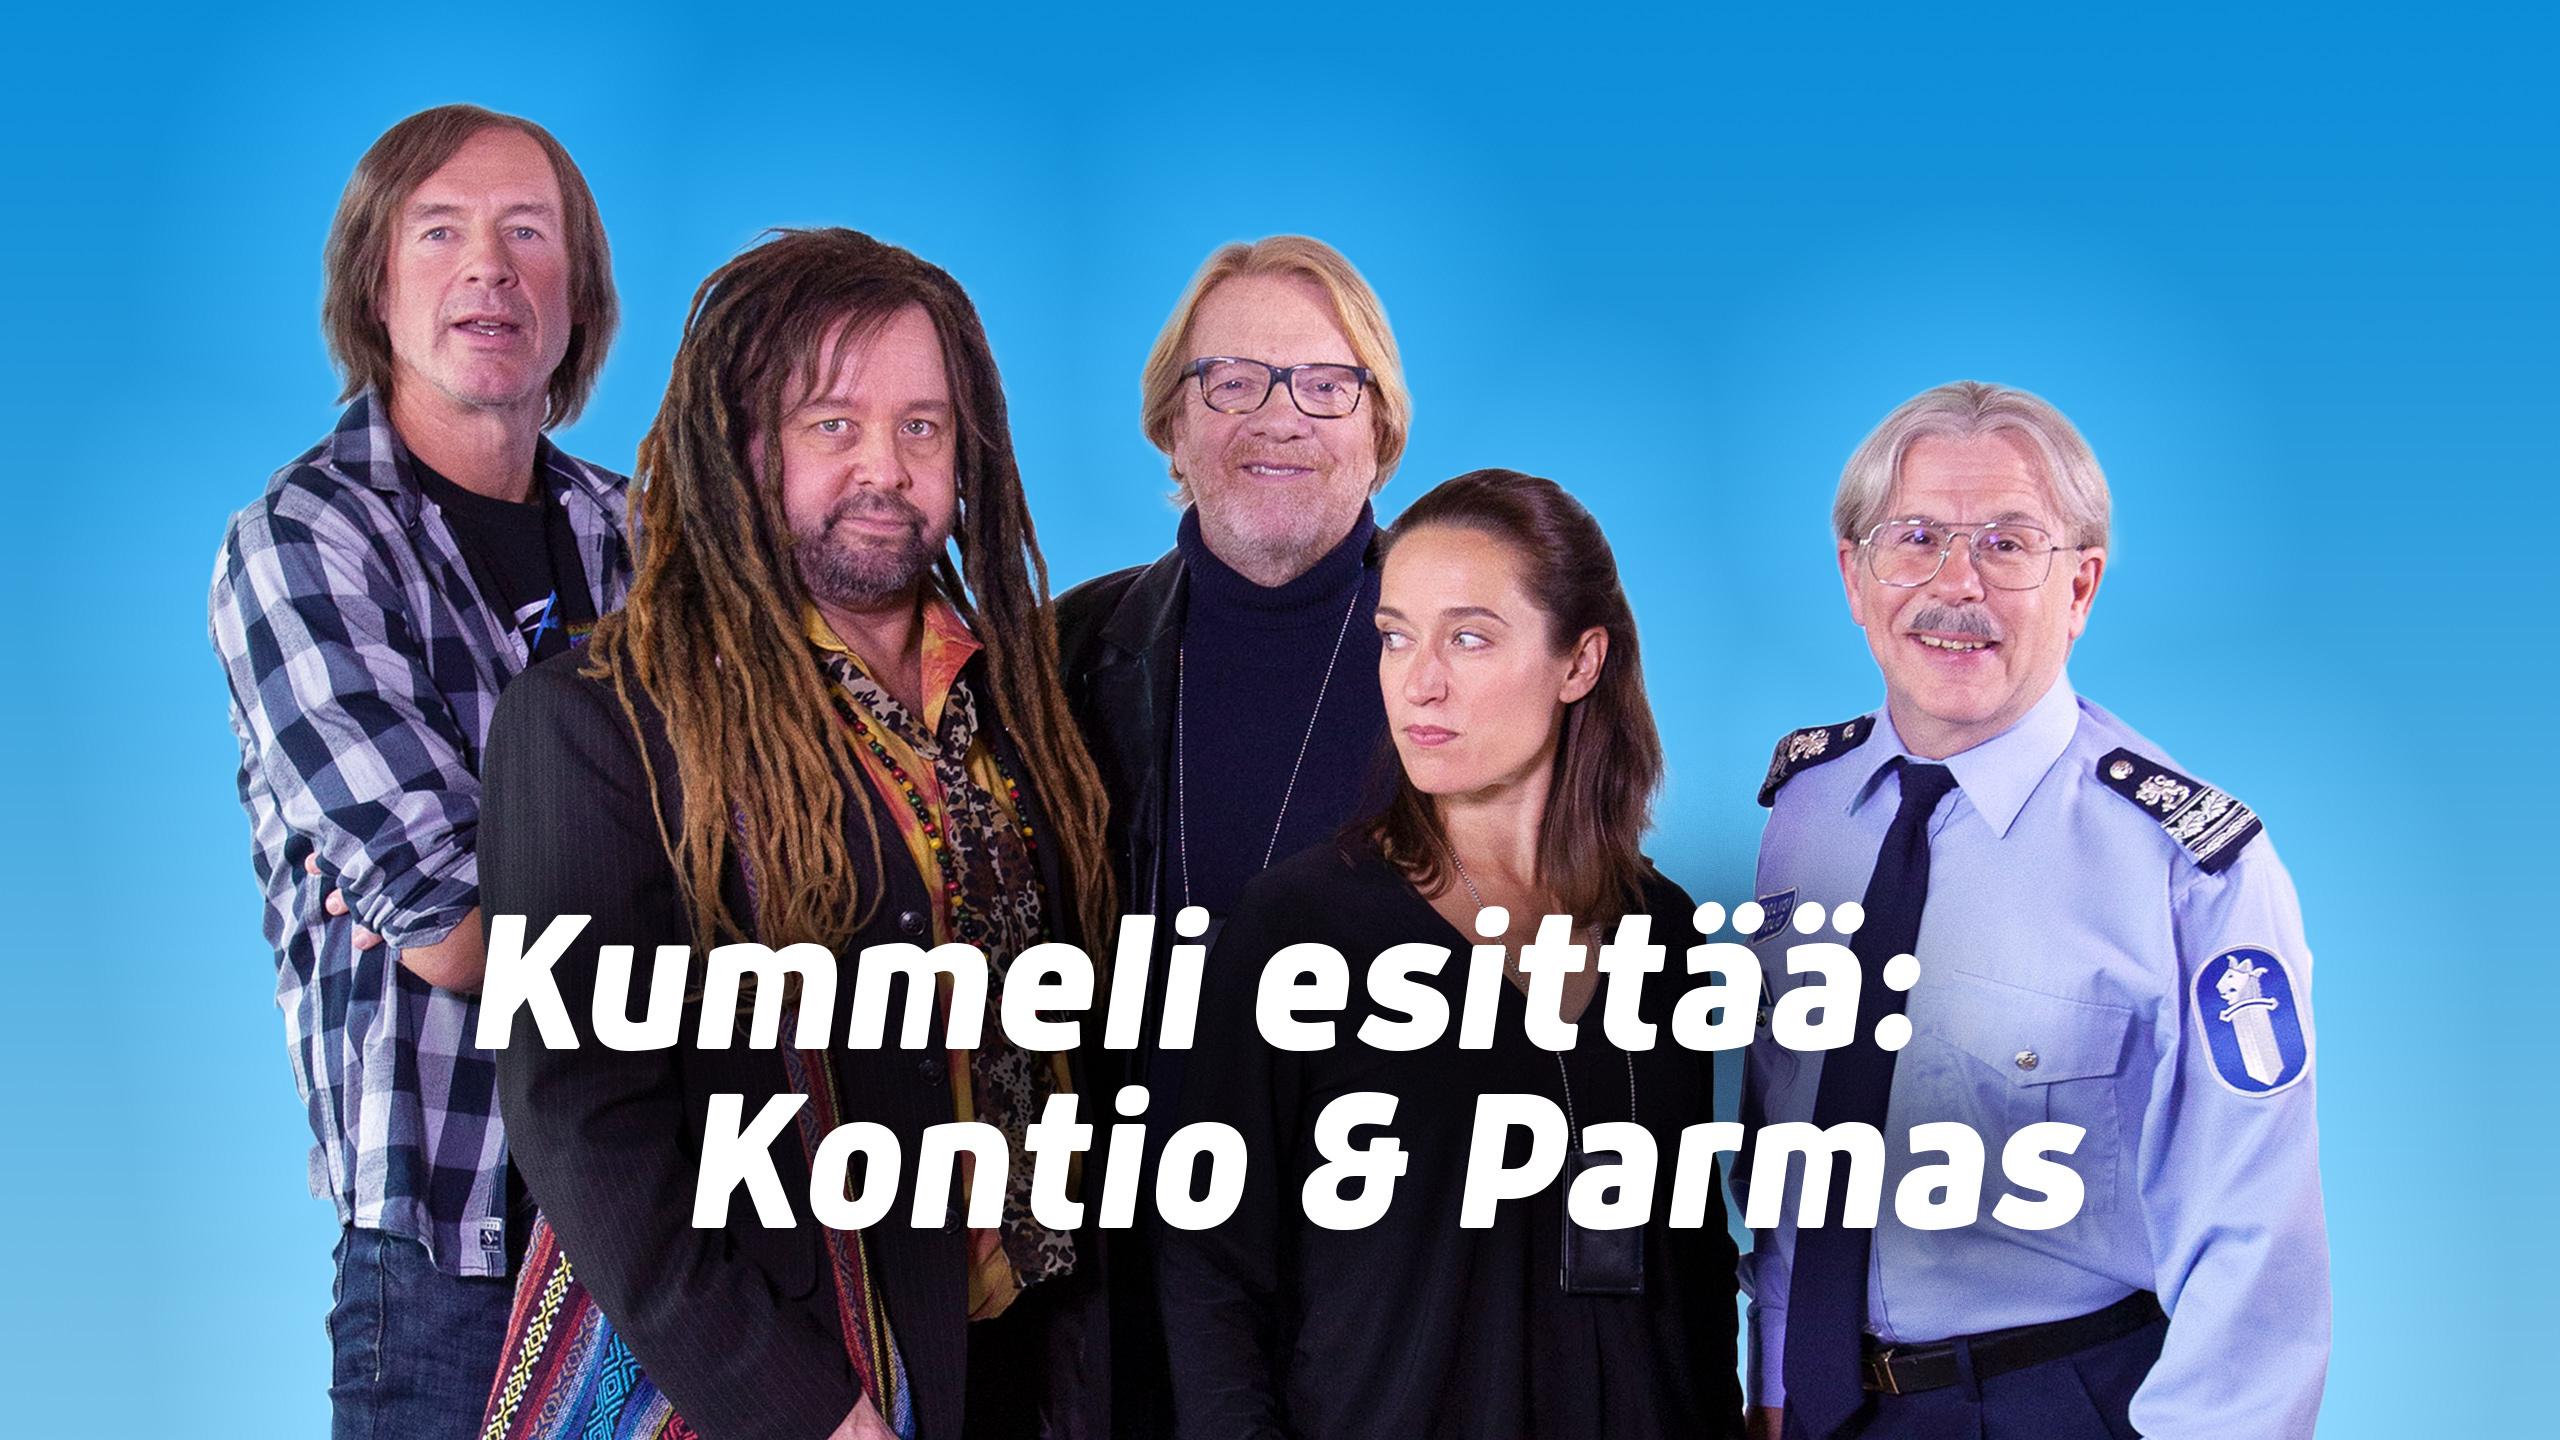 Kummeli esittää: Kontio & Parmas